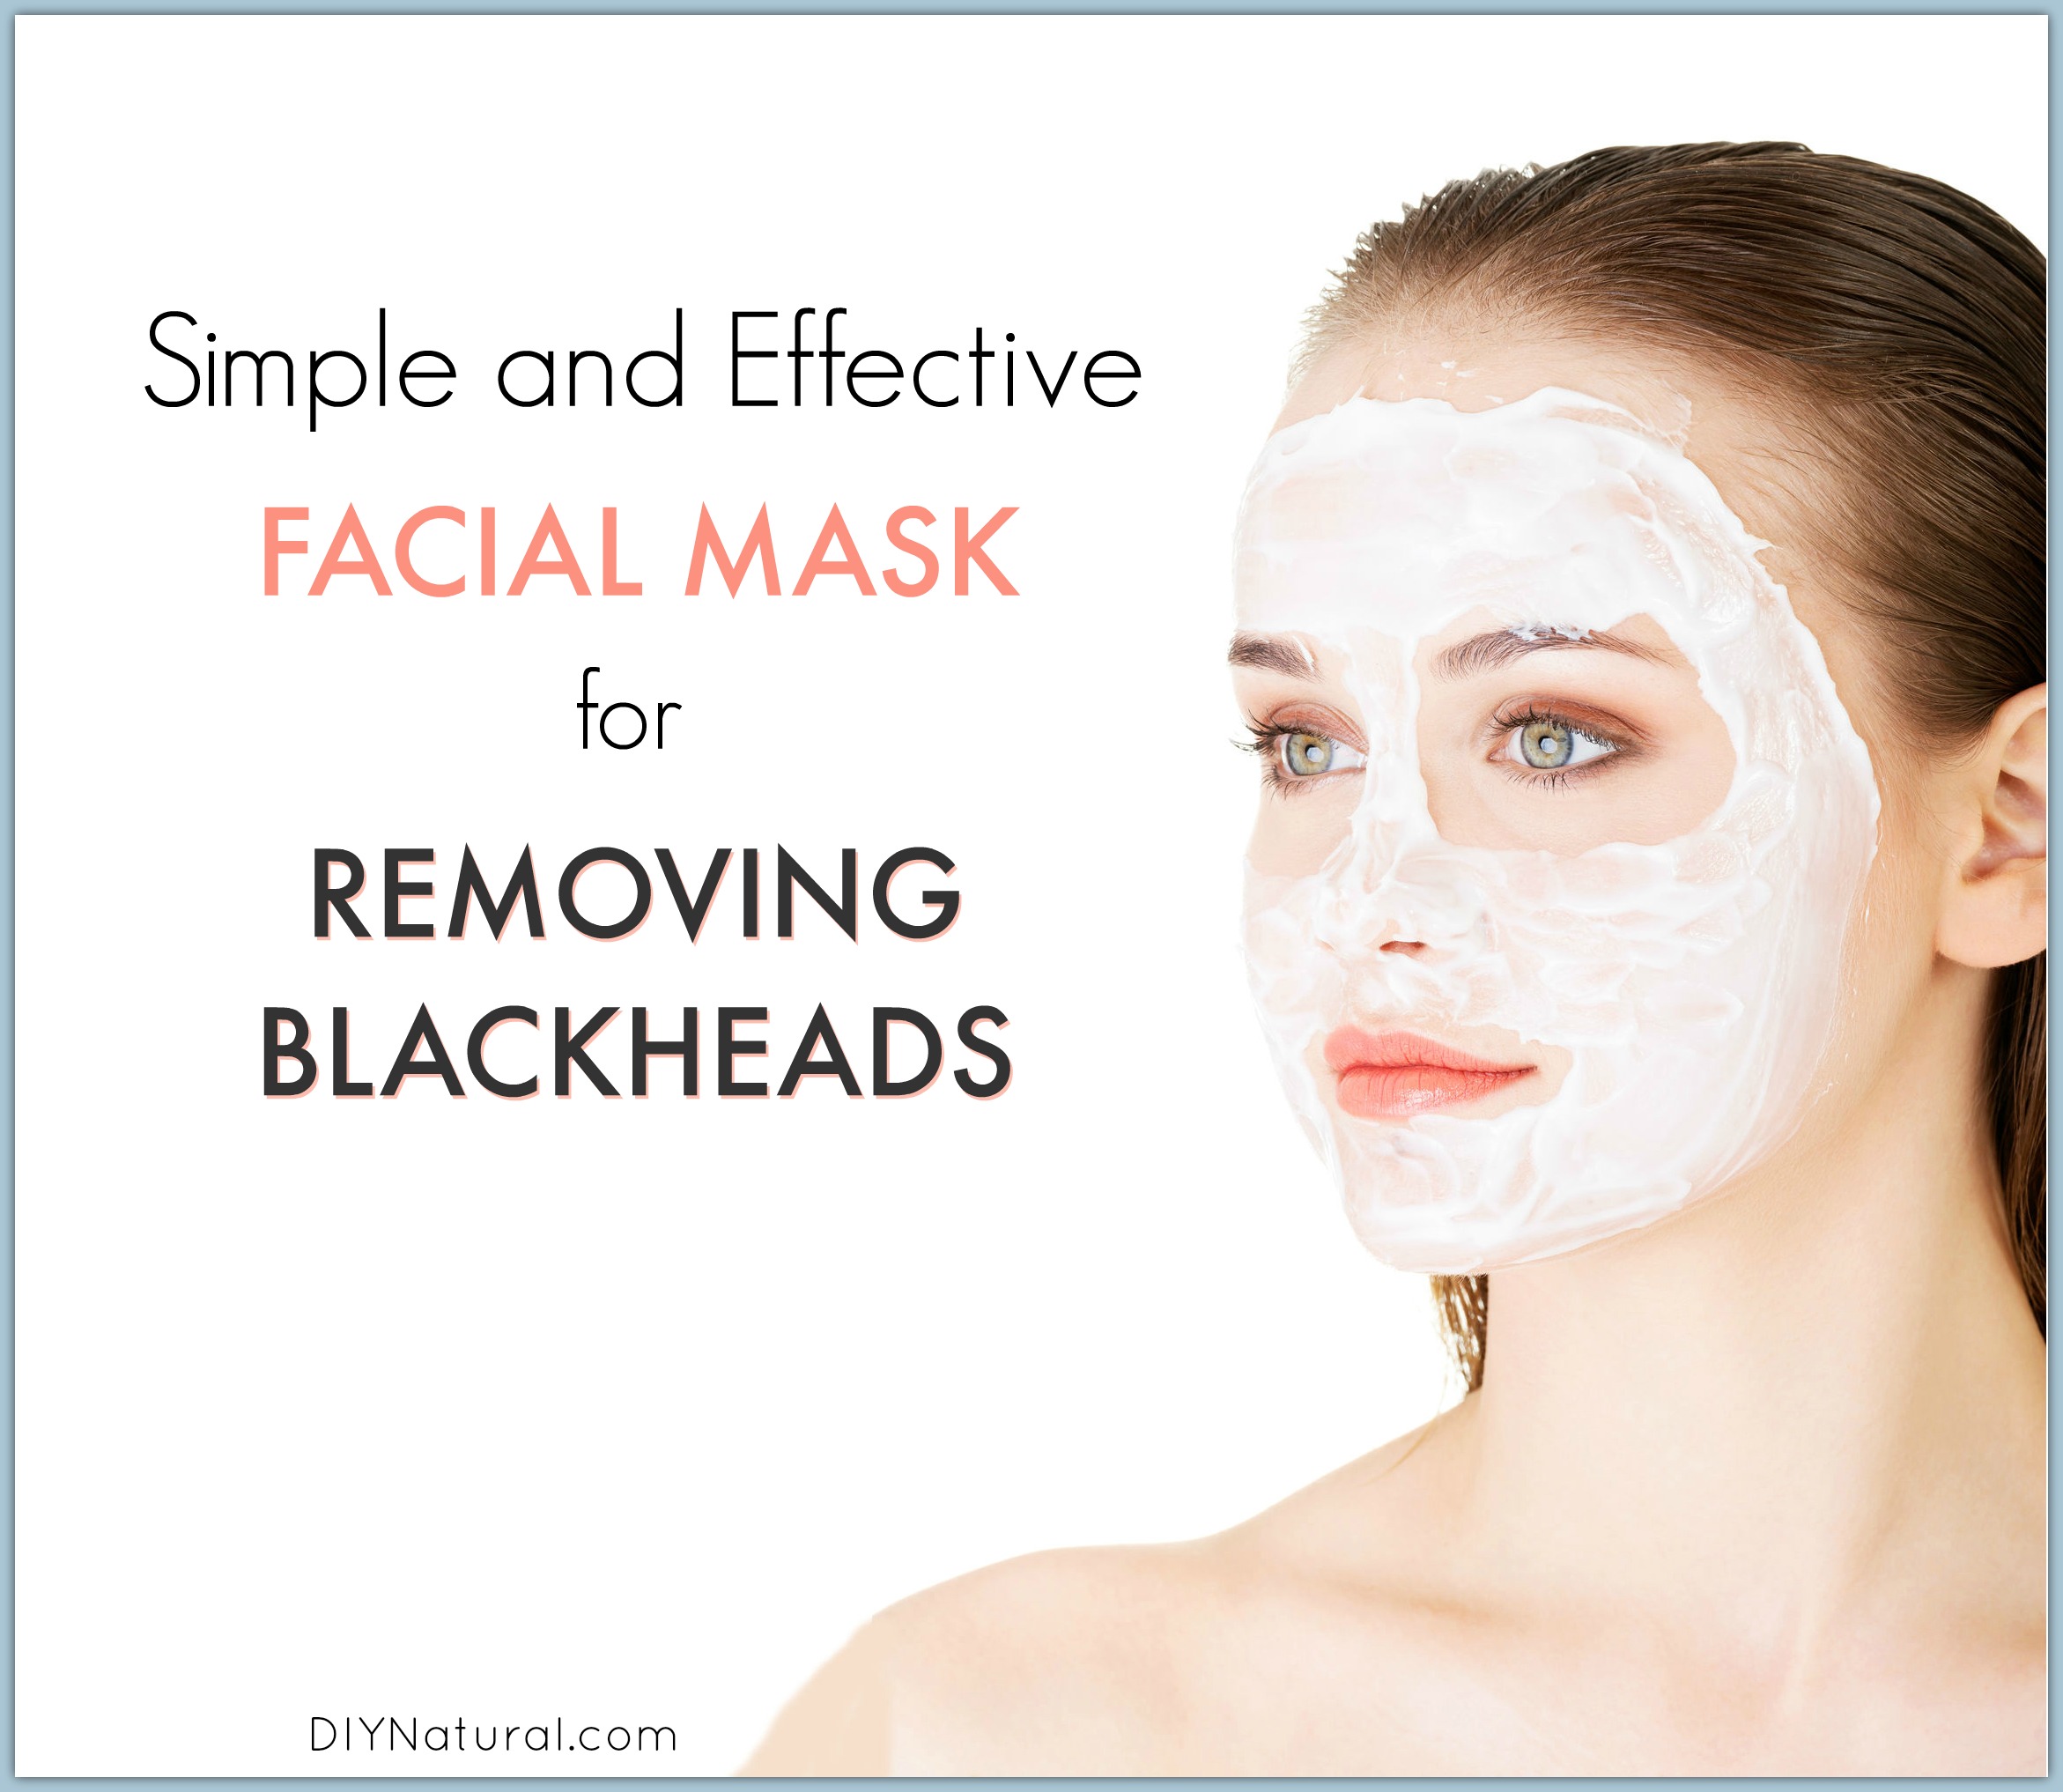 egyptisk Praktisk Juster Blackheads: A Quick and Easy Homemade Blackhead Mask